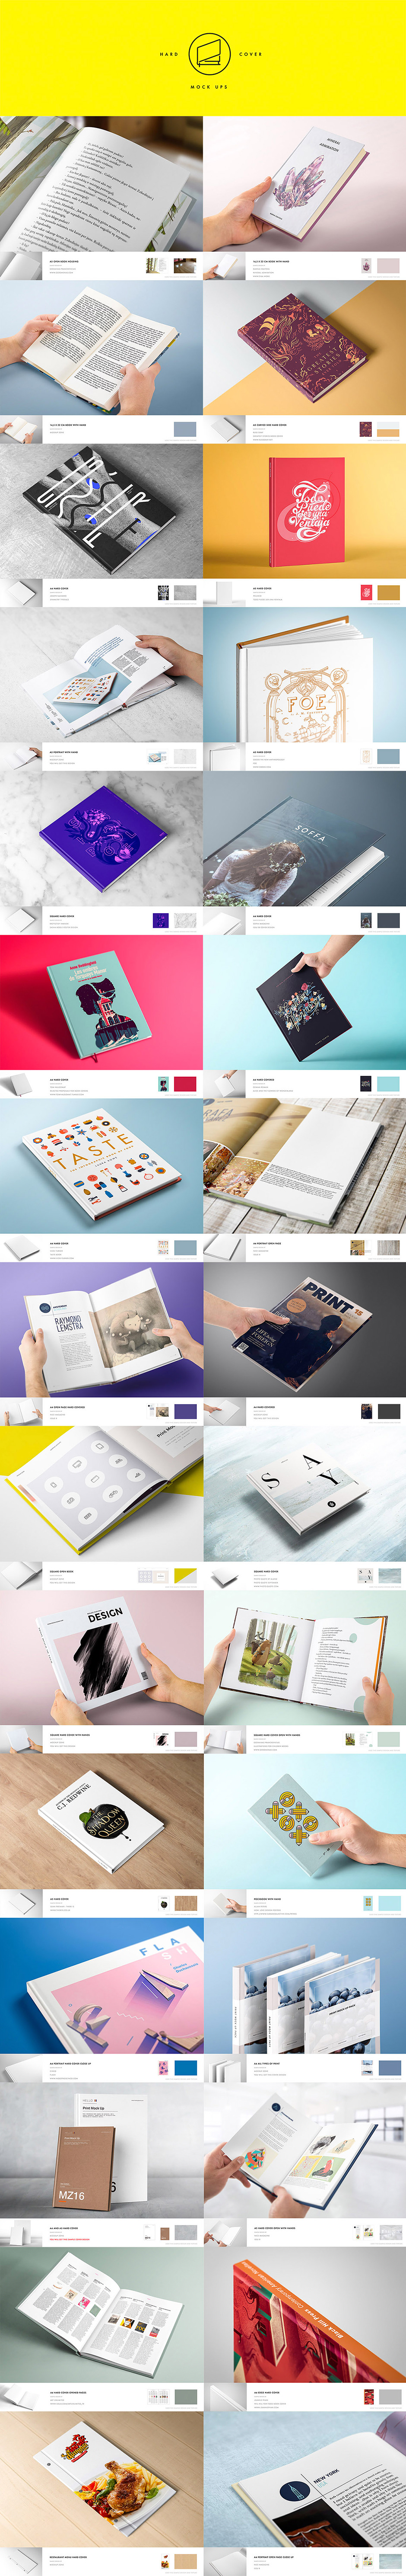 Print Design Mockup - Präsentationsvorlagen für deine Print Designs